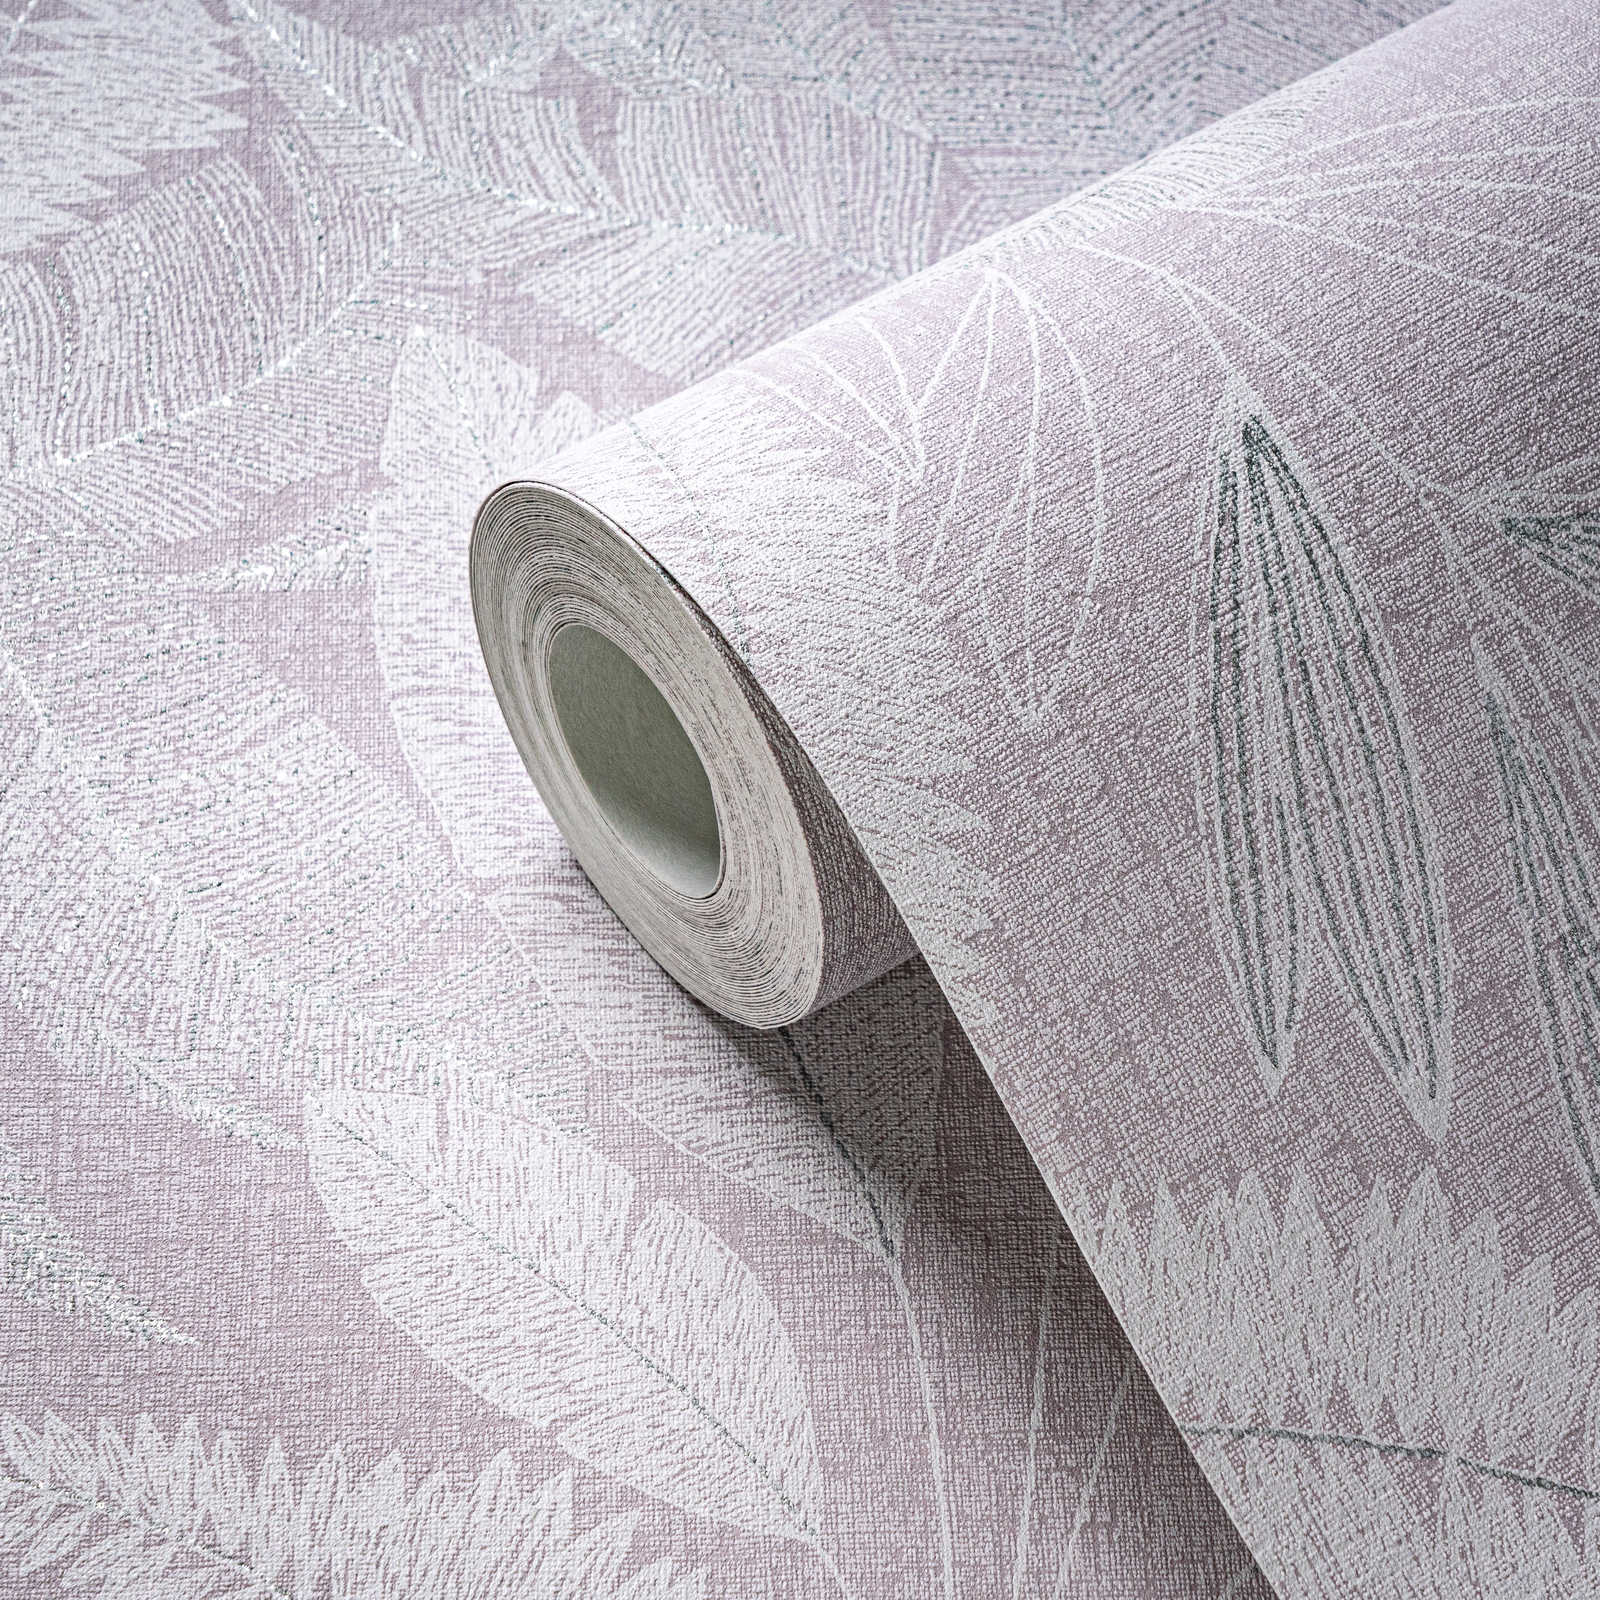             Papel pintado no tejido con motivo de hojas grandes ligeramente texturizado - violeta, blanco, gris
        